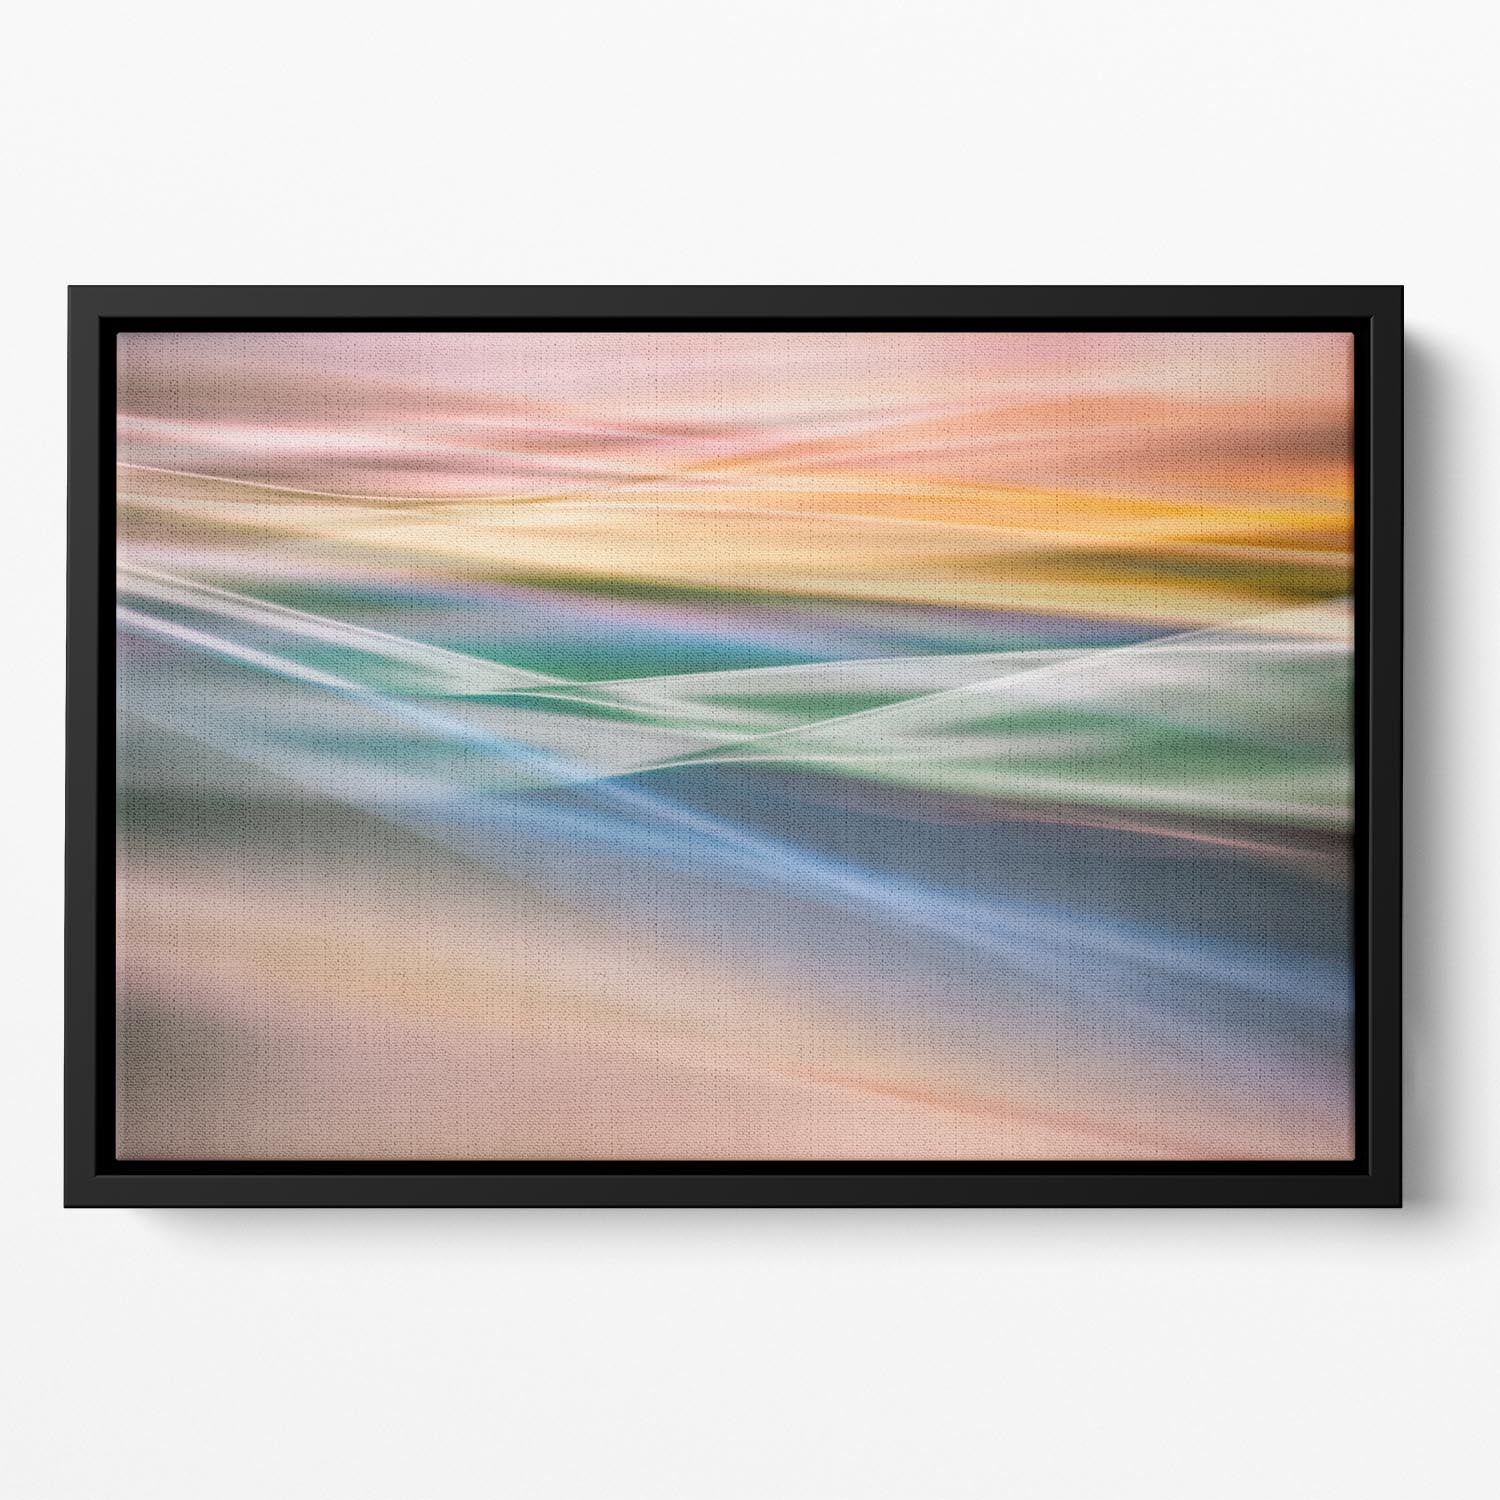 Coloured Waves Floating Framed Canvas - Canvas Art Rocks - 2